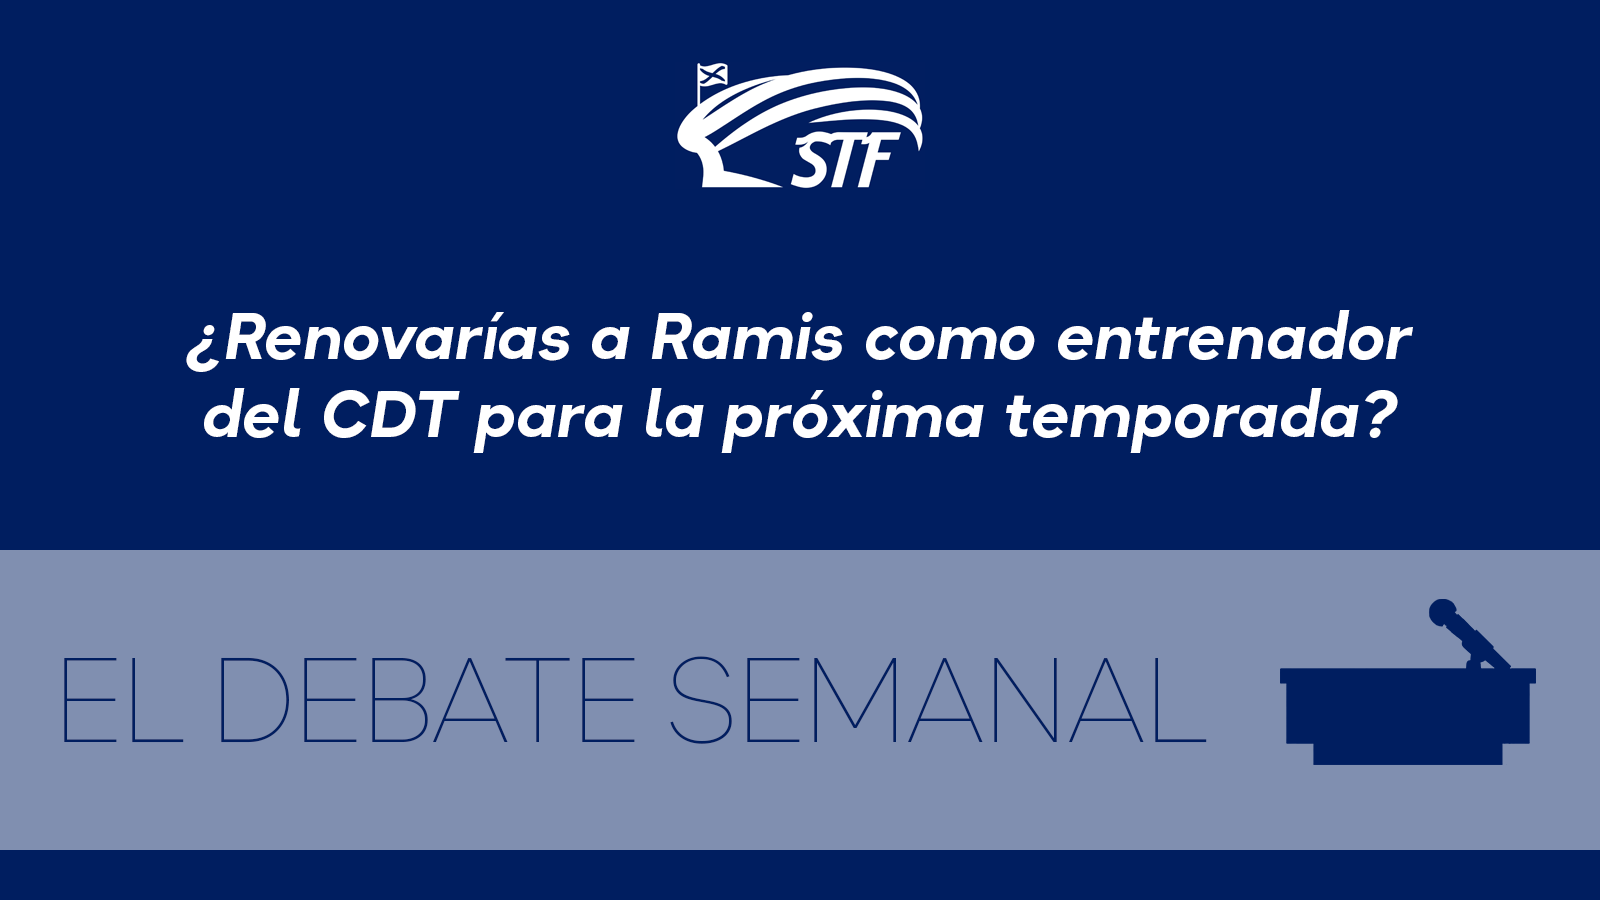 El Debate Semanal: ¿Renovarías a Ramis como entrenador del CD Tenerife? El 70'83% dice no